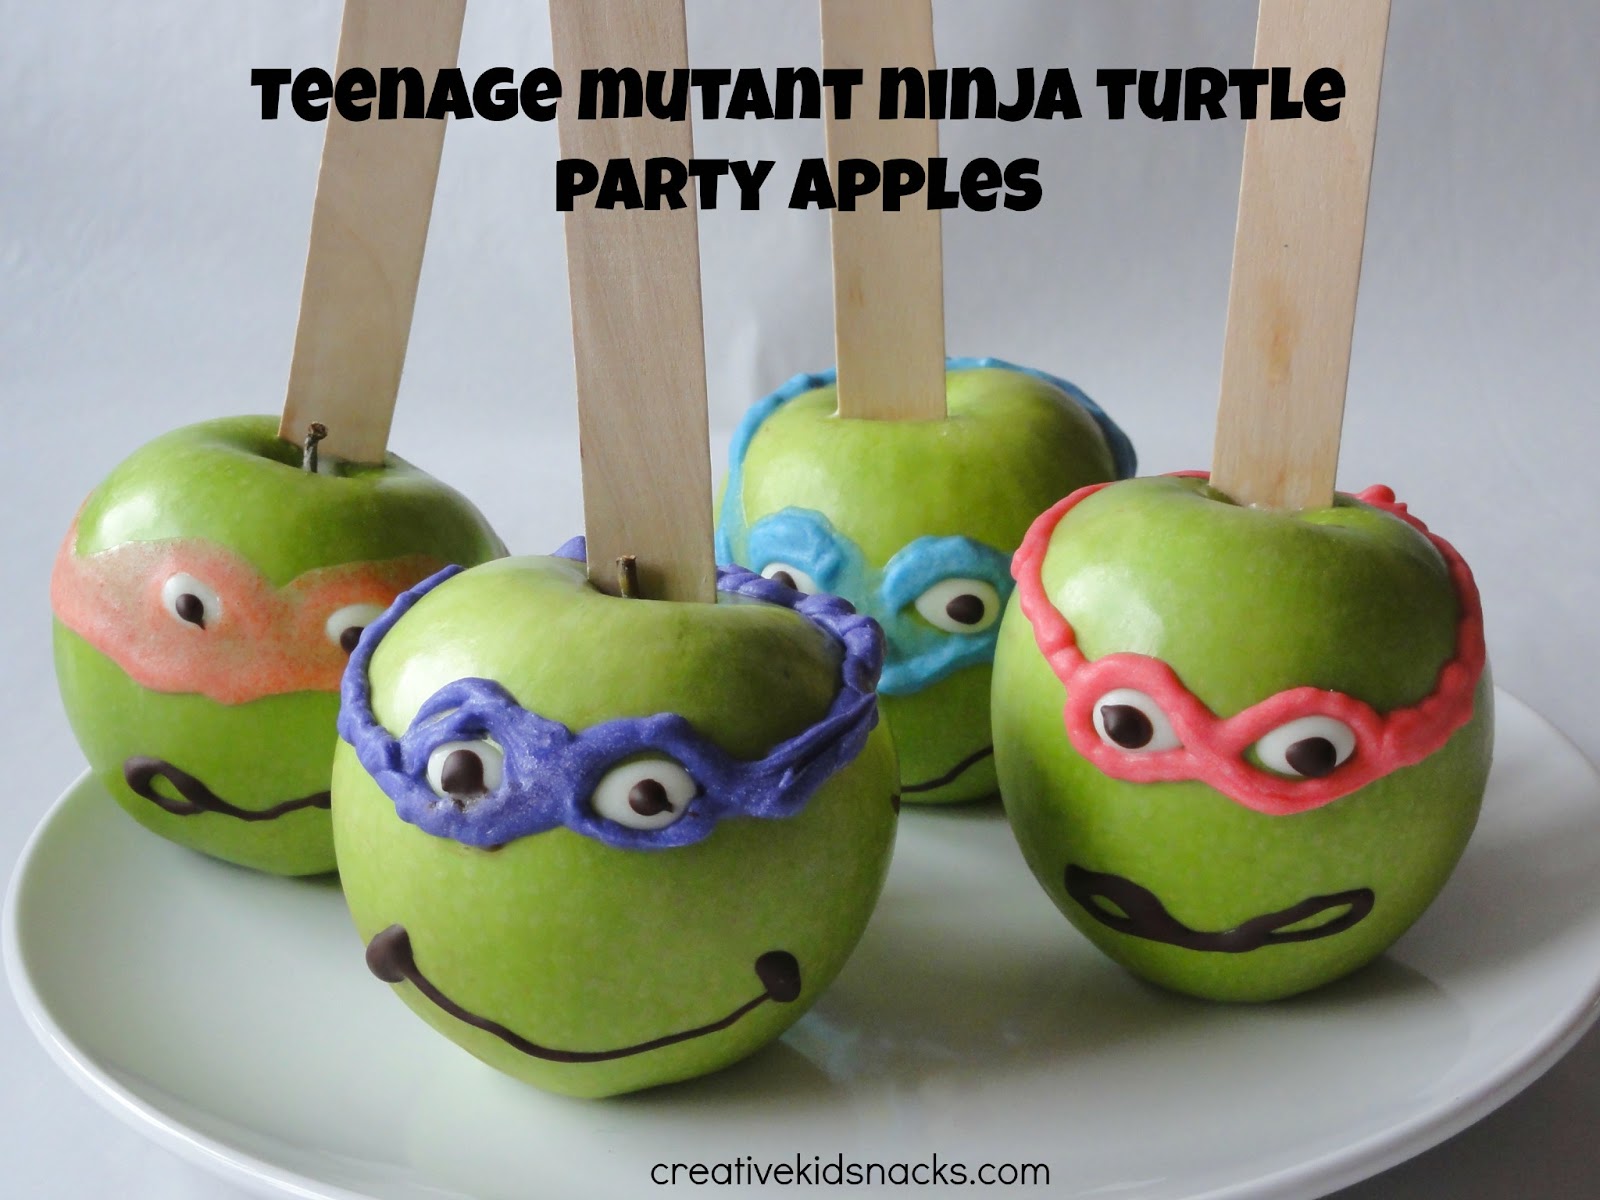 simple chocolate cake decorating ideas Teenage Mutant Ninja Turtle Apples by Creative Kid Snacks